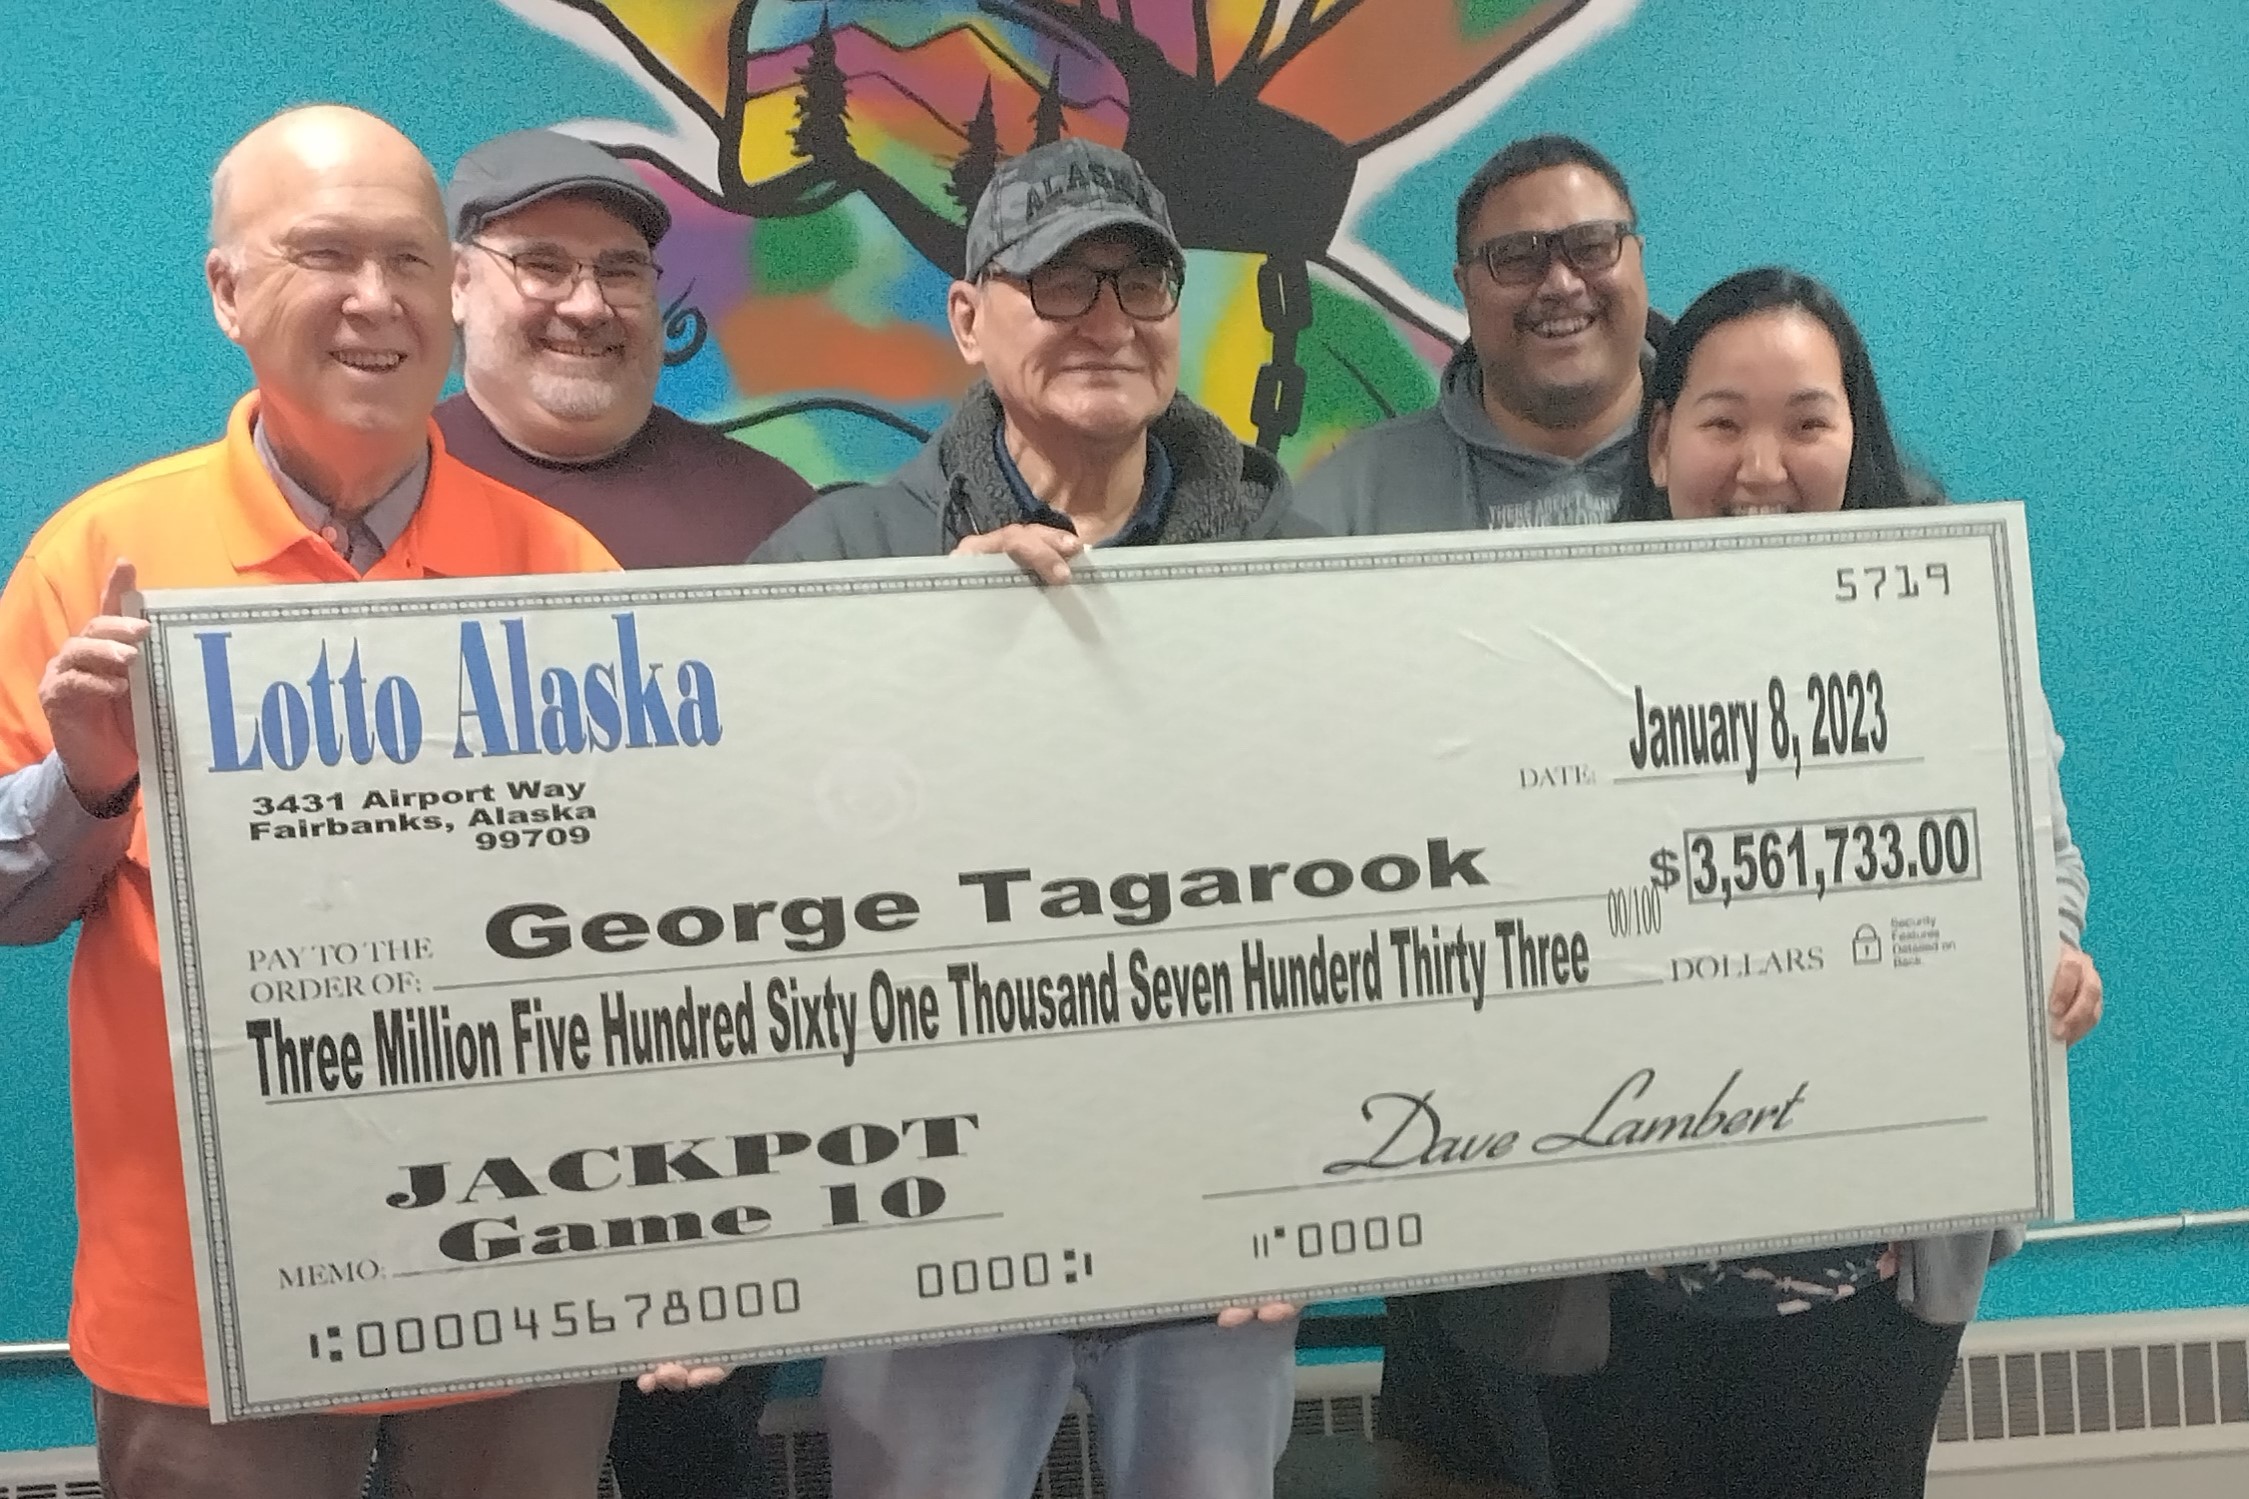 Lotto Alaska winner George Tagarook